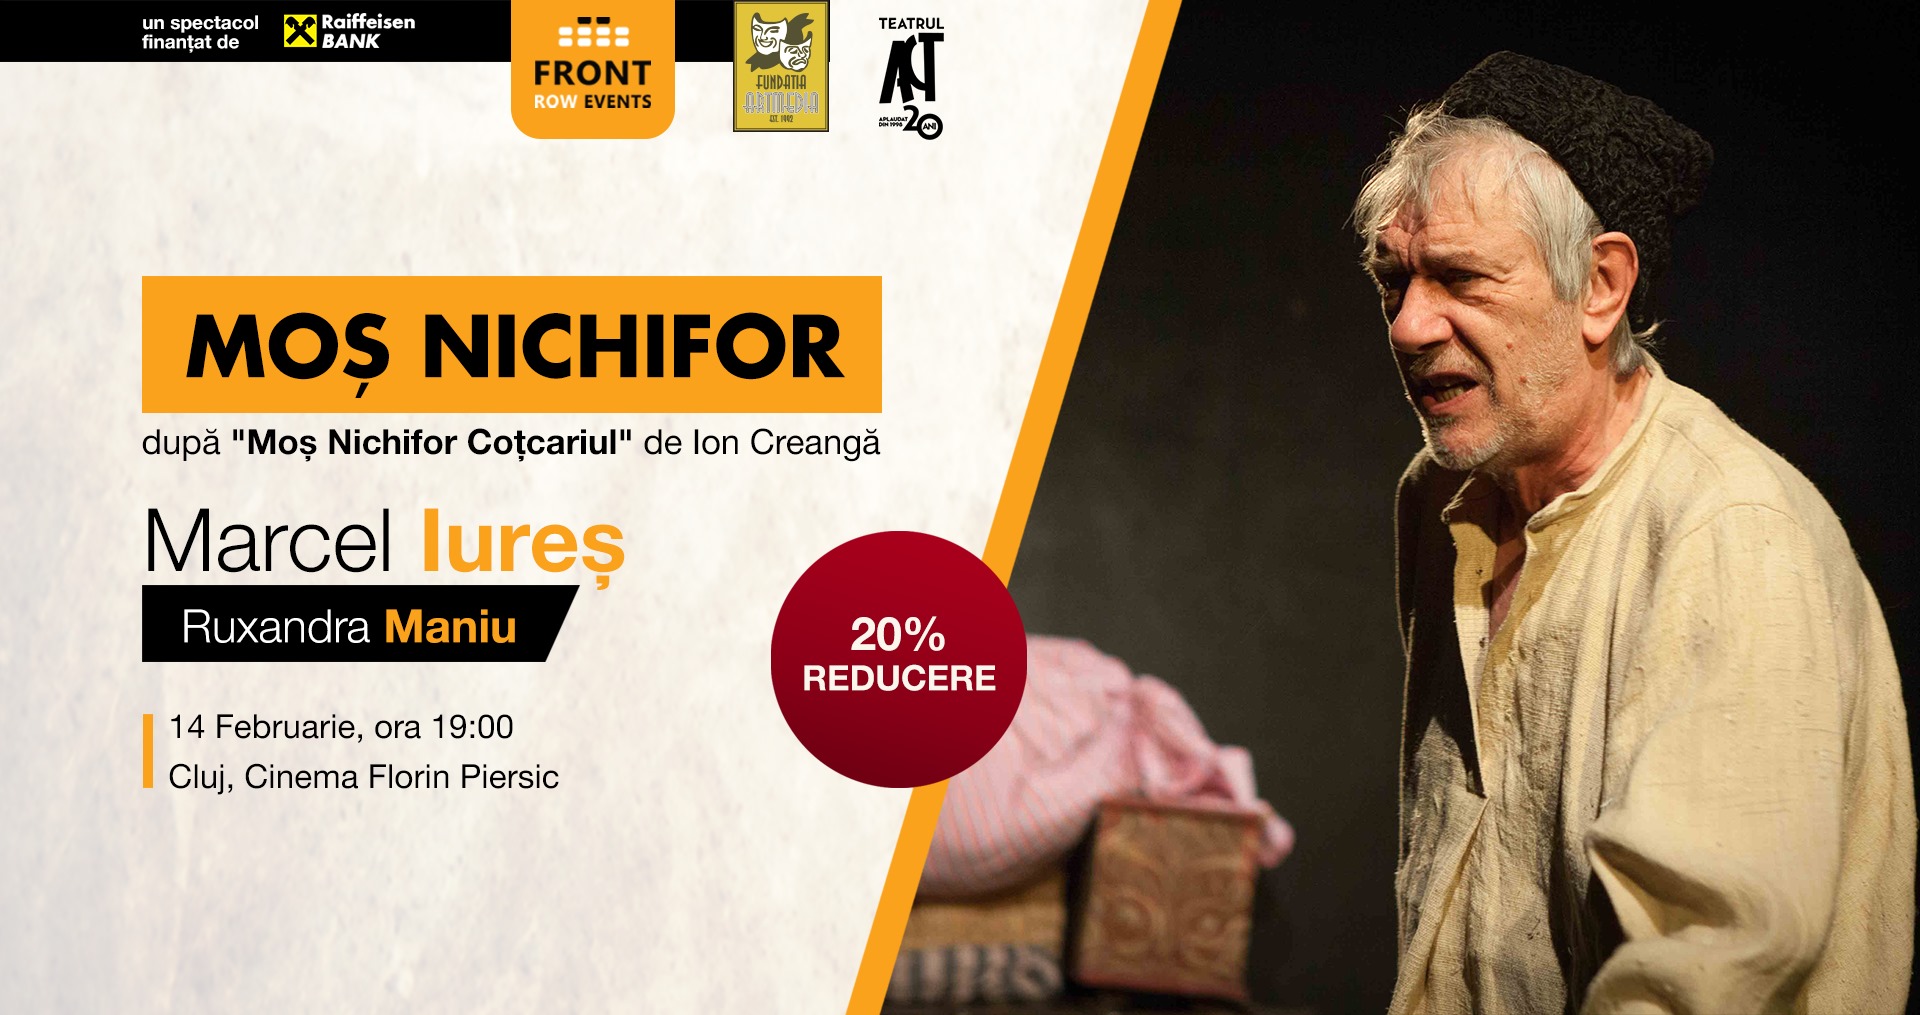 Spectacol de teatru: „Moș Nichifor” cu Marcel Iureș